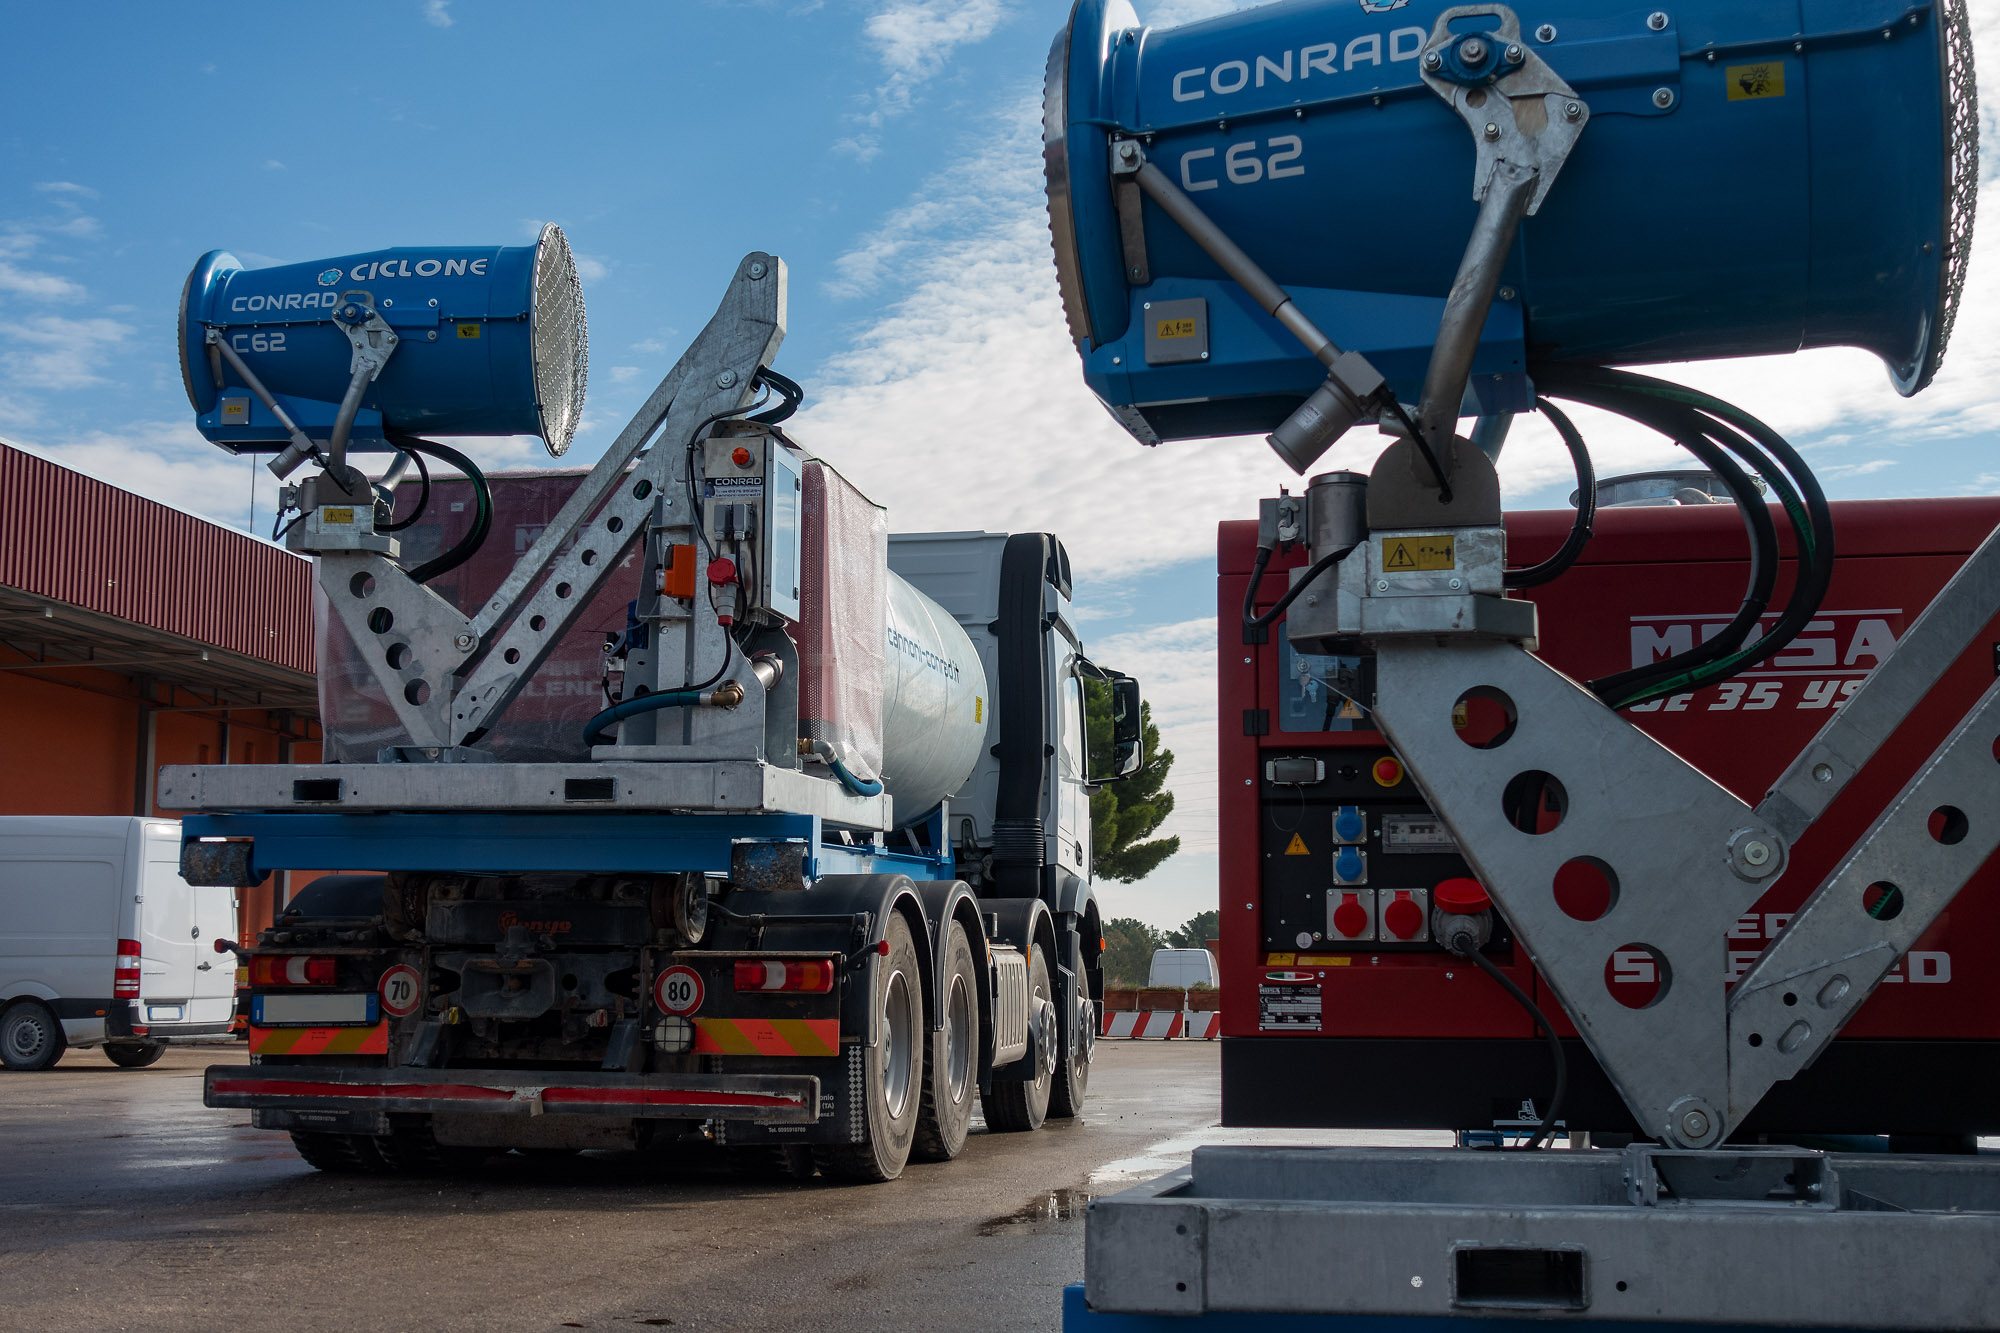 Cannoni-Conrad - Professional machineries for dust suppression in Taranto